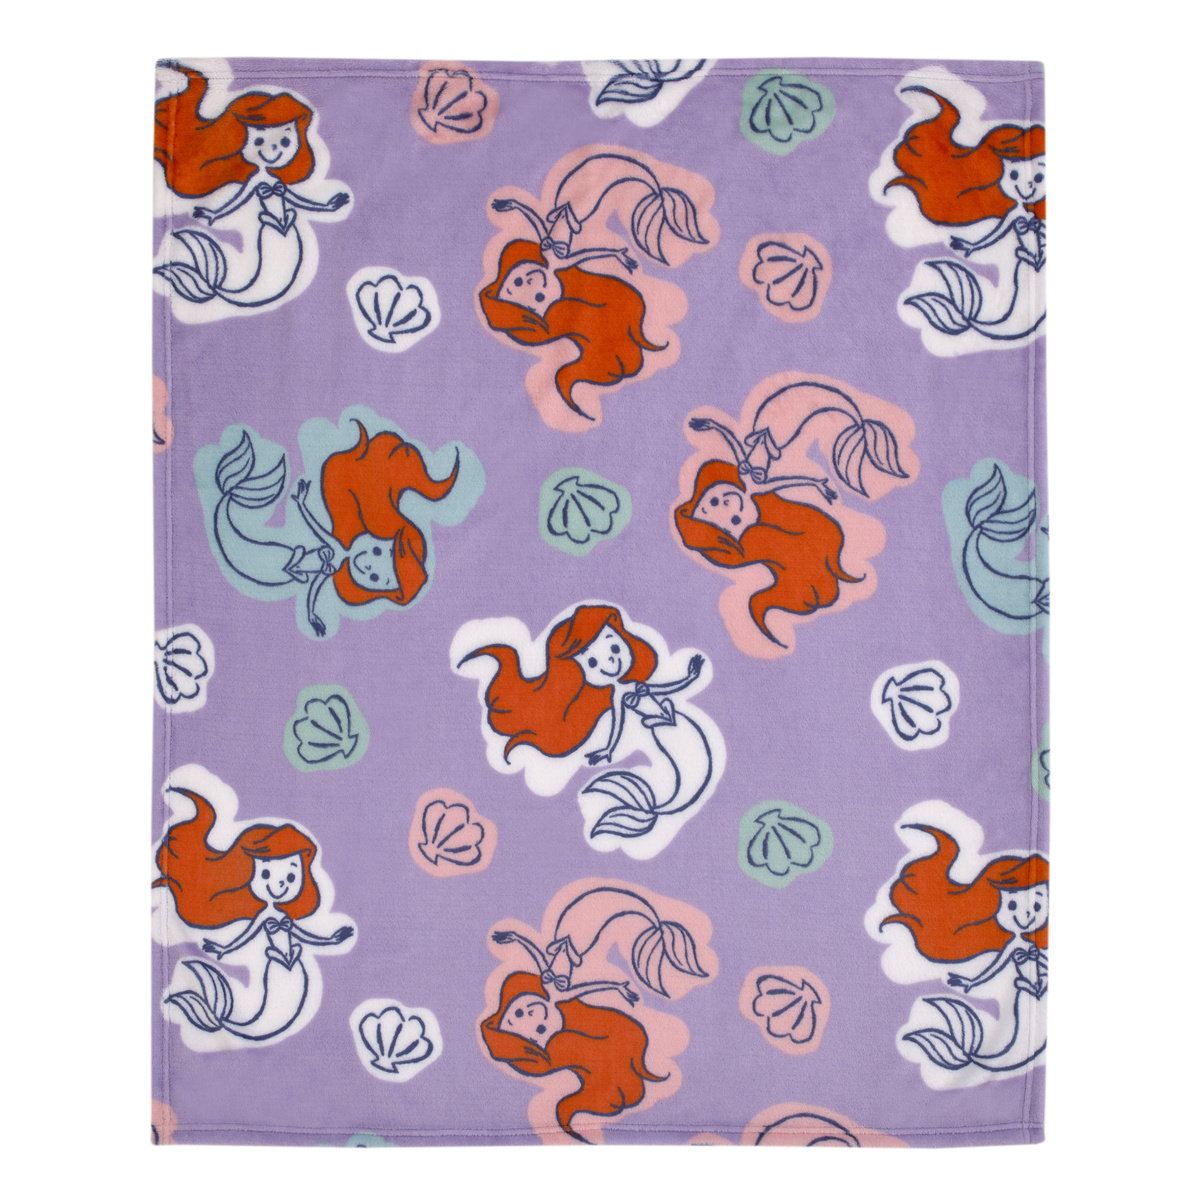 Disney The Little Mermaid Baby Blanket